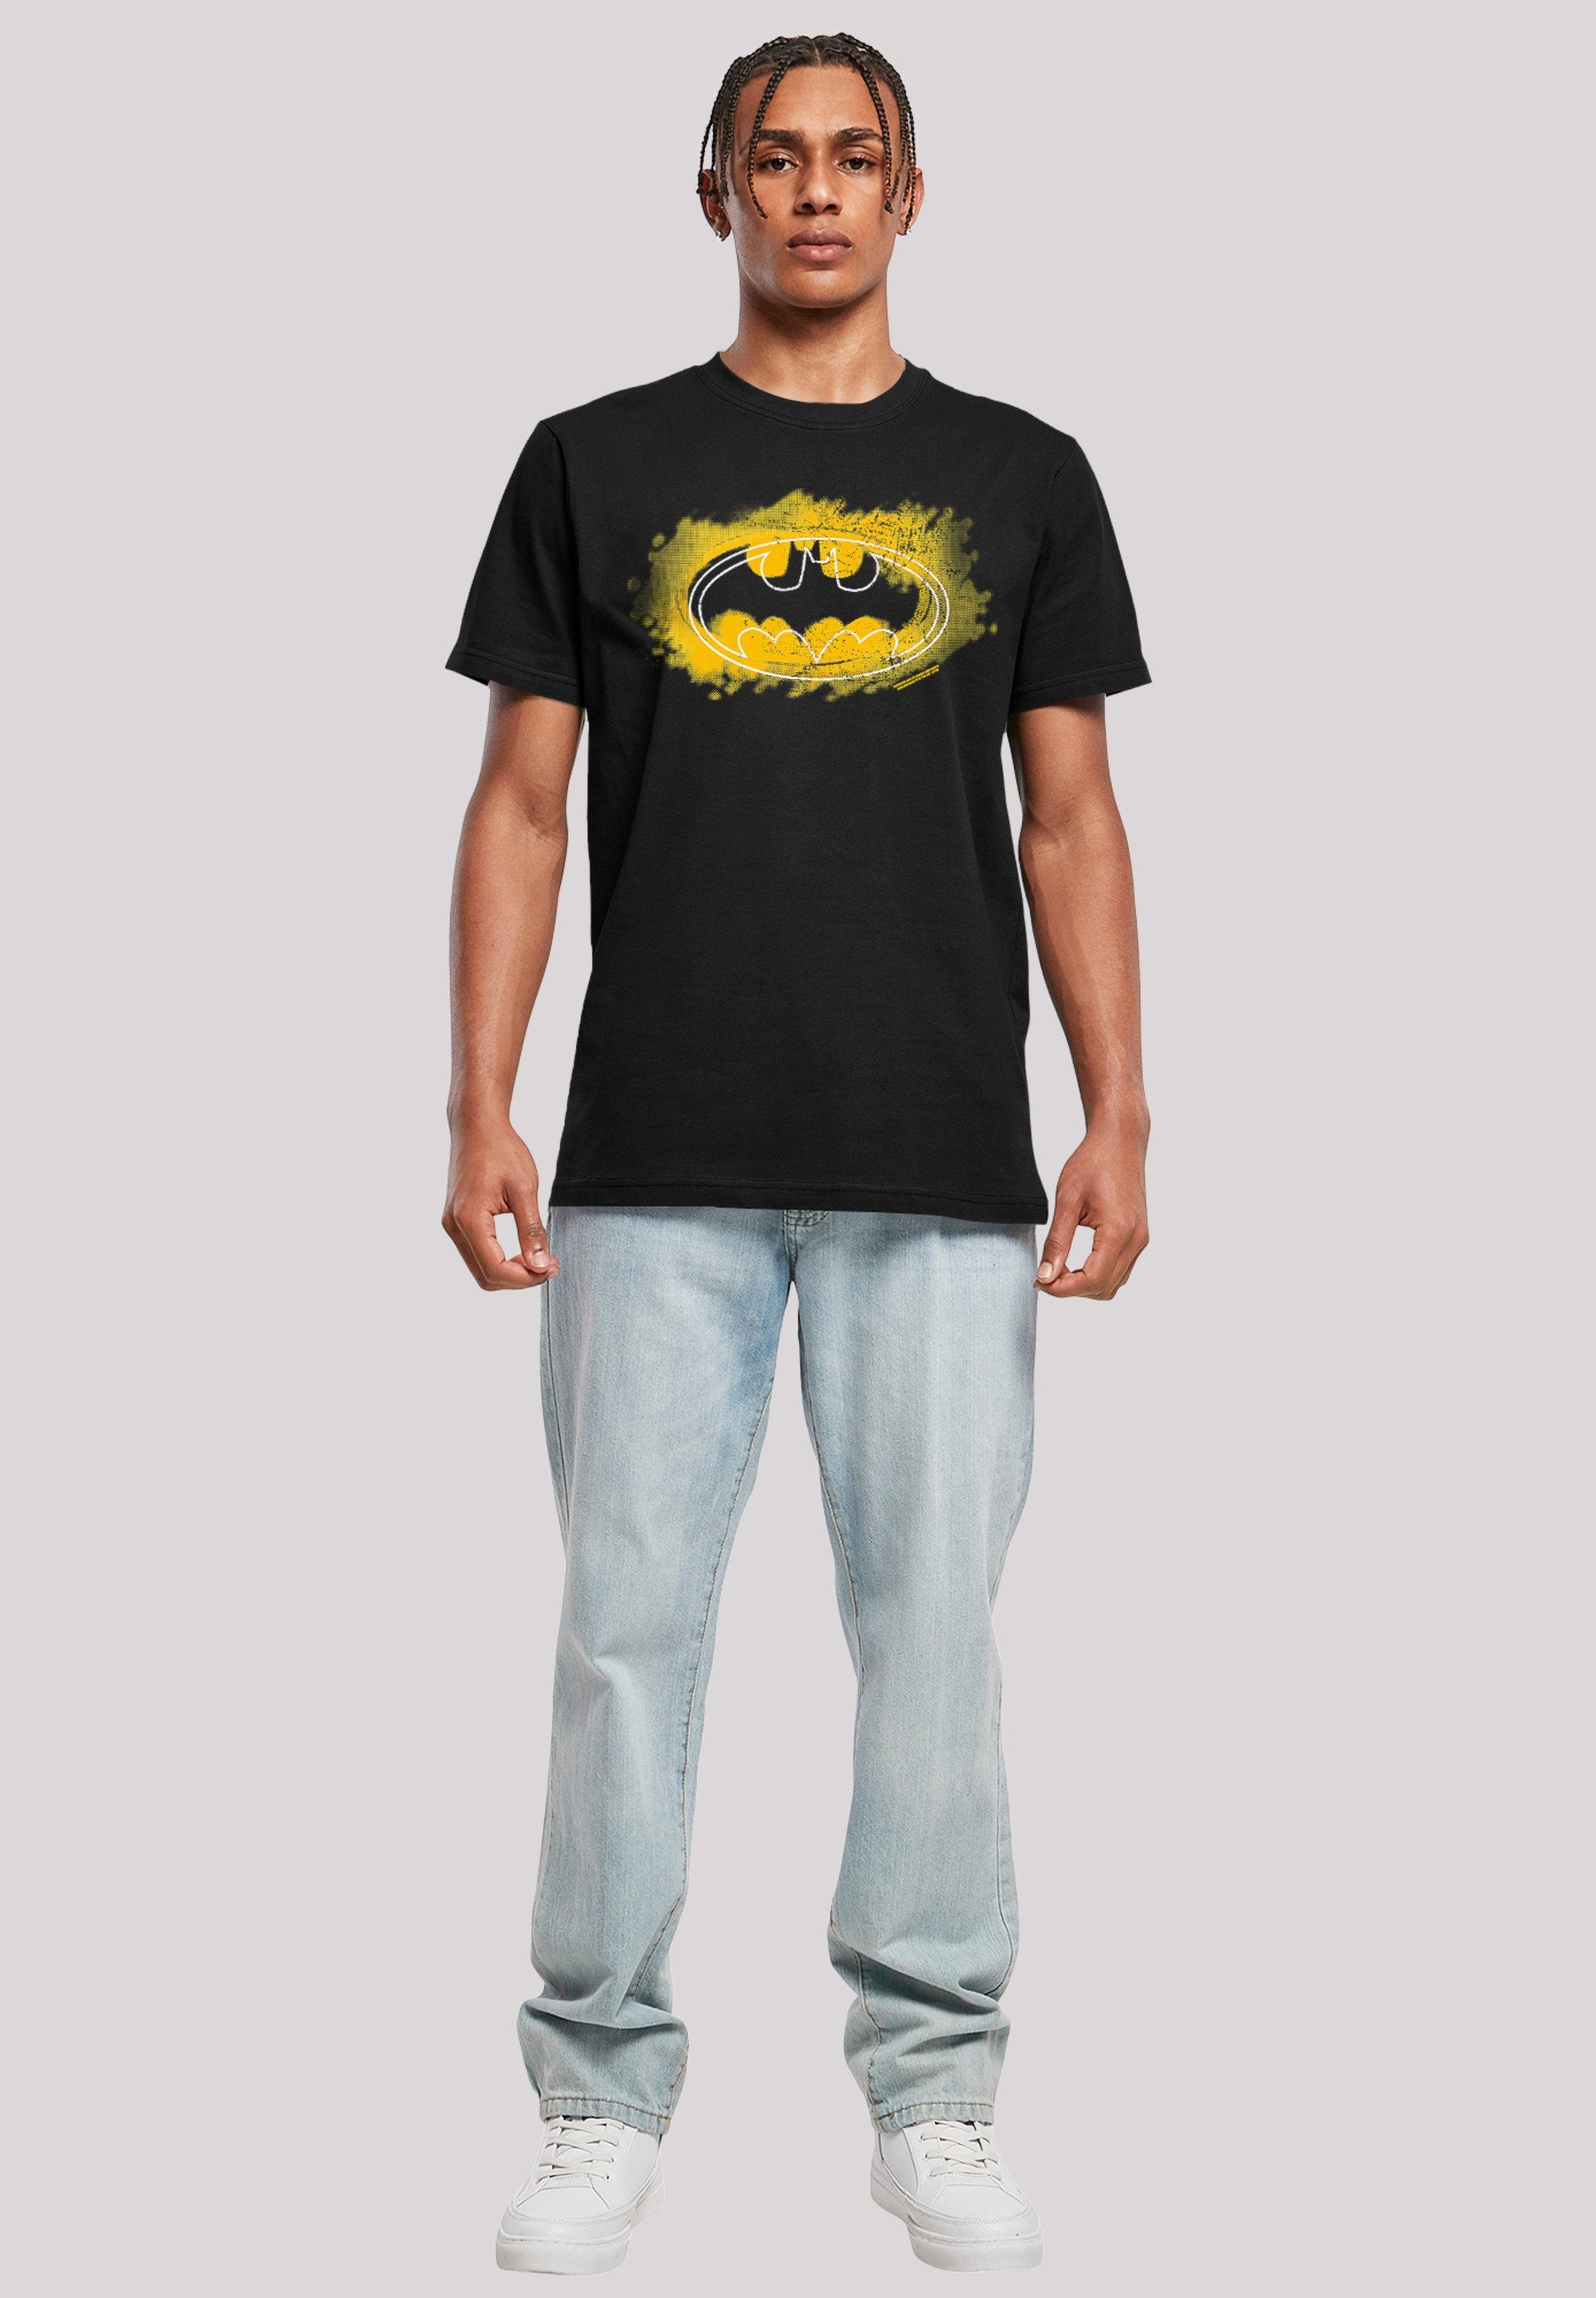 Logo T-Shirt Spray DC F4NT4STIC Comics Batman Merch,Regular-Fit,Basic,Bedruckt Herren,Premium